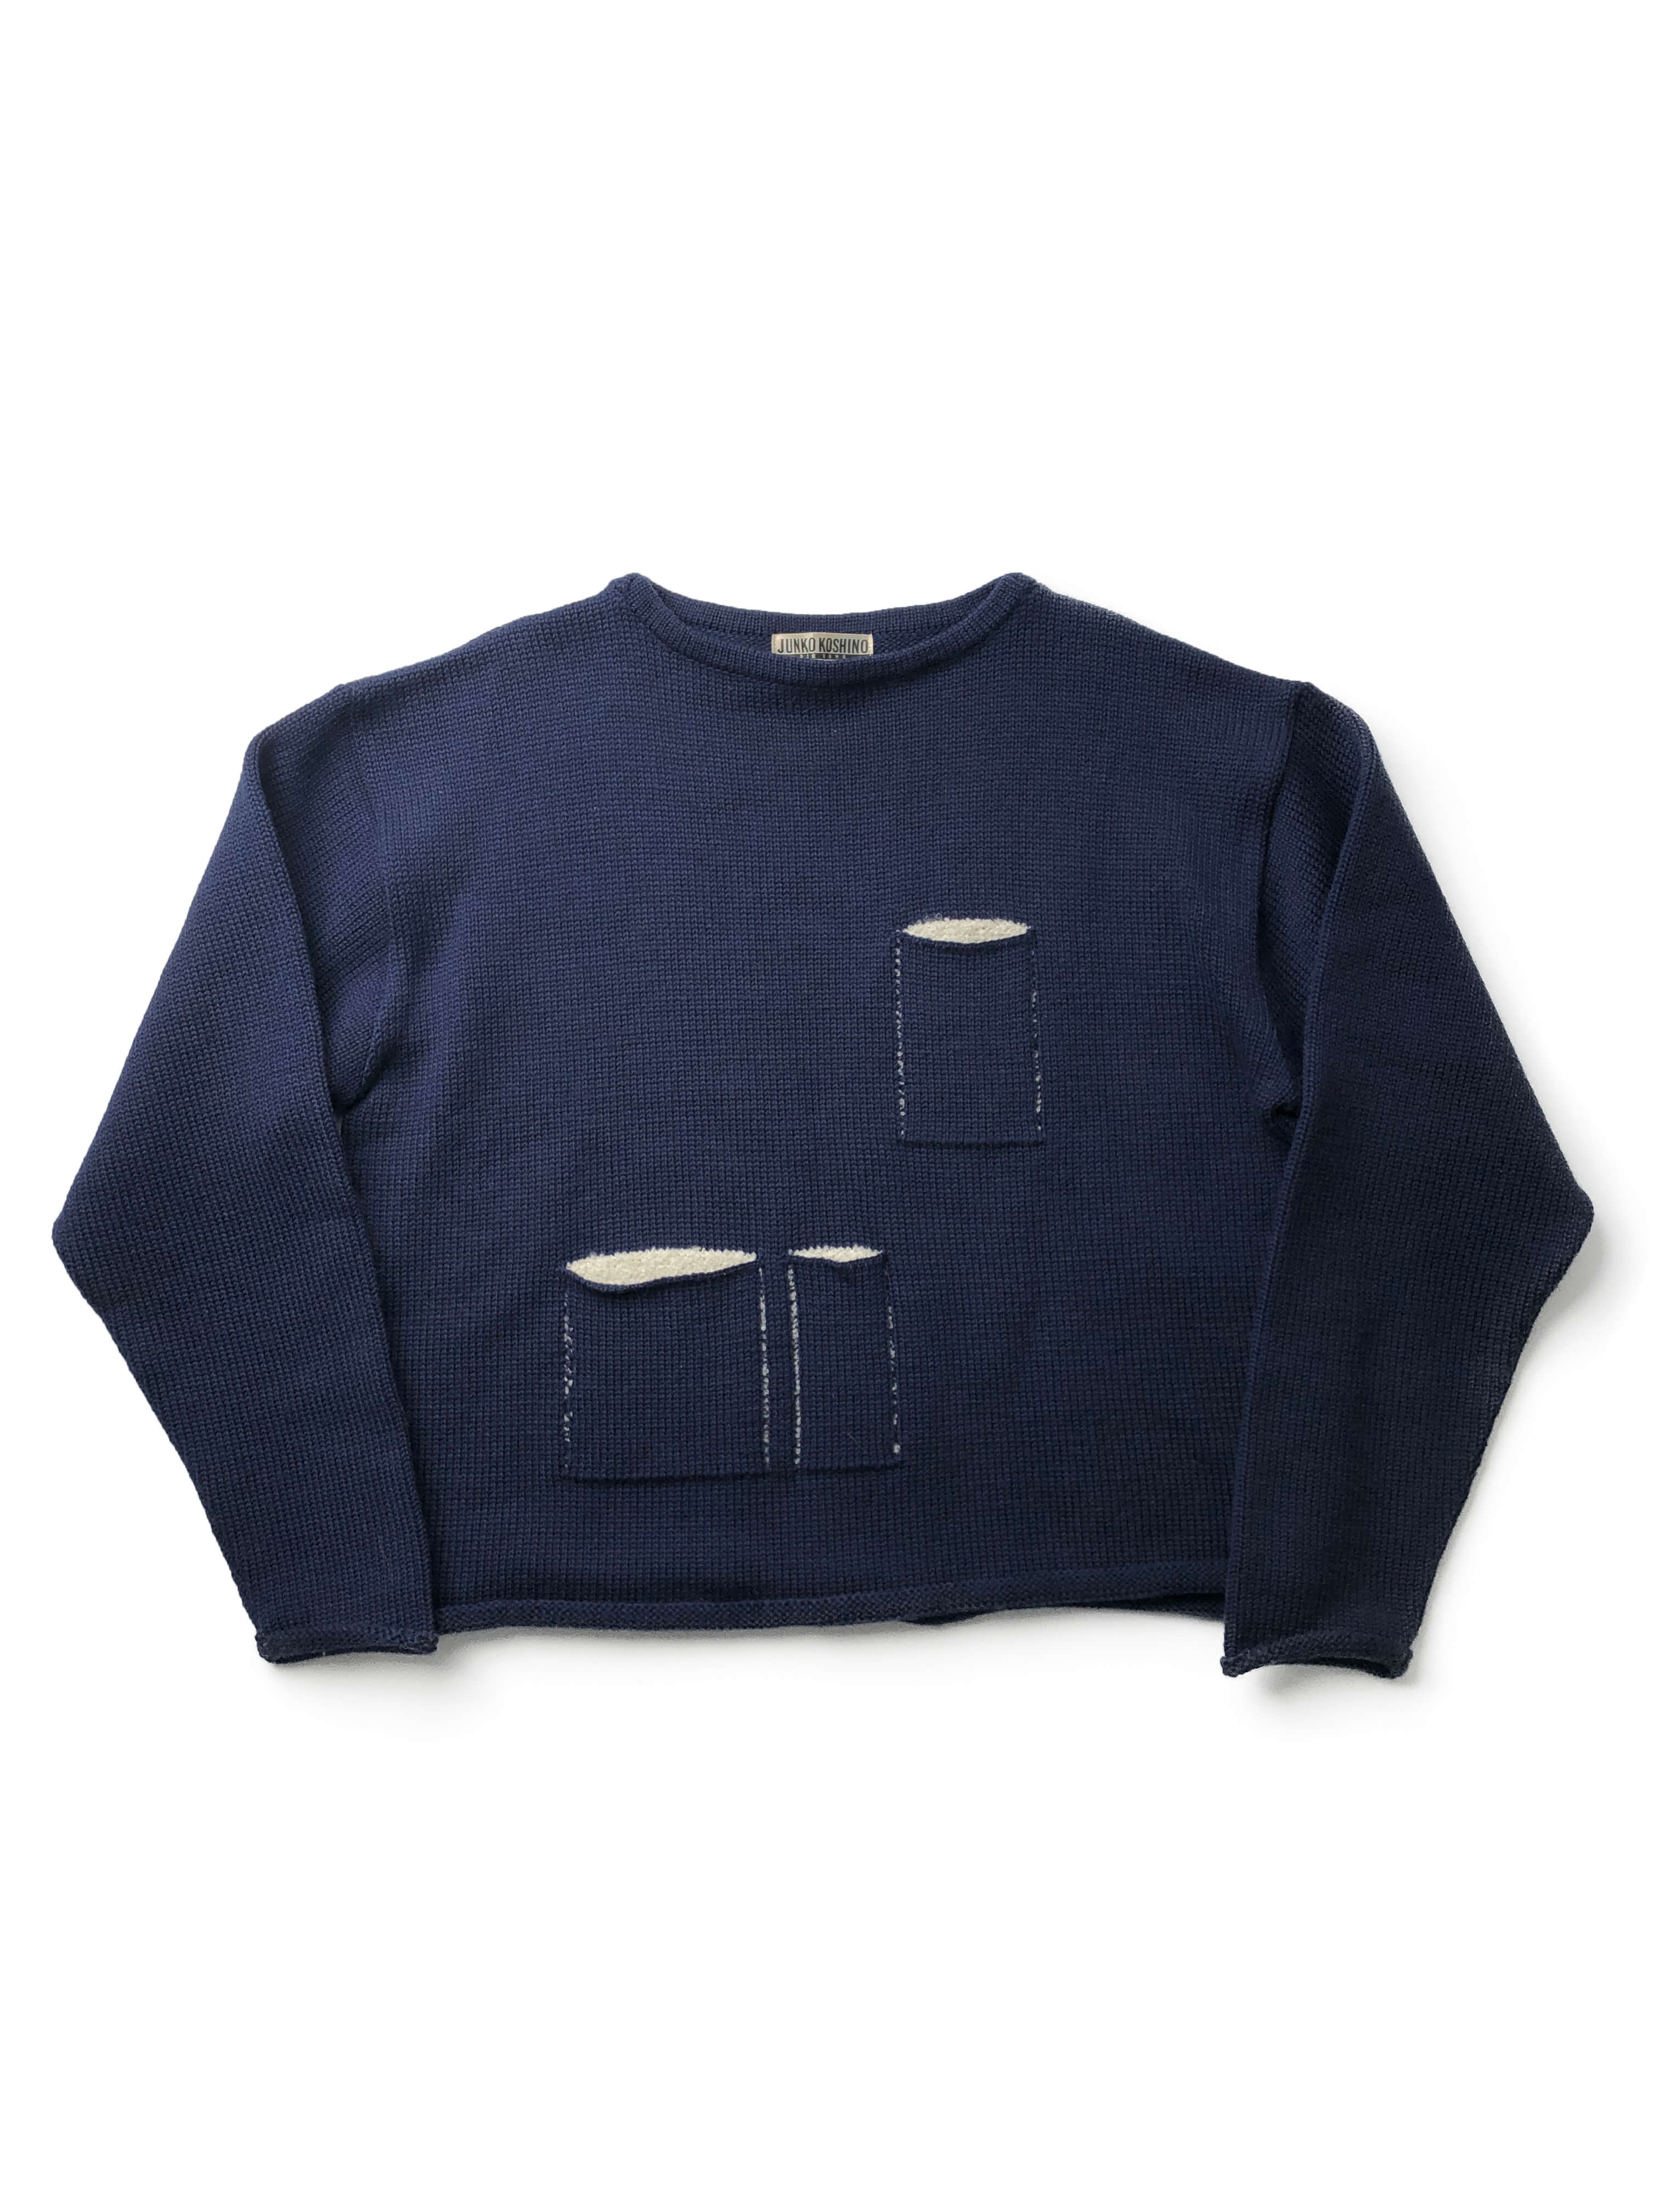 JUNKO KOSHINO PER UOMO 3-pocket sweater